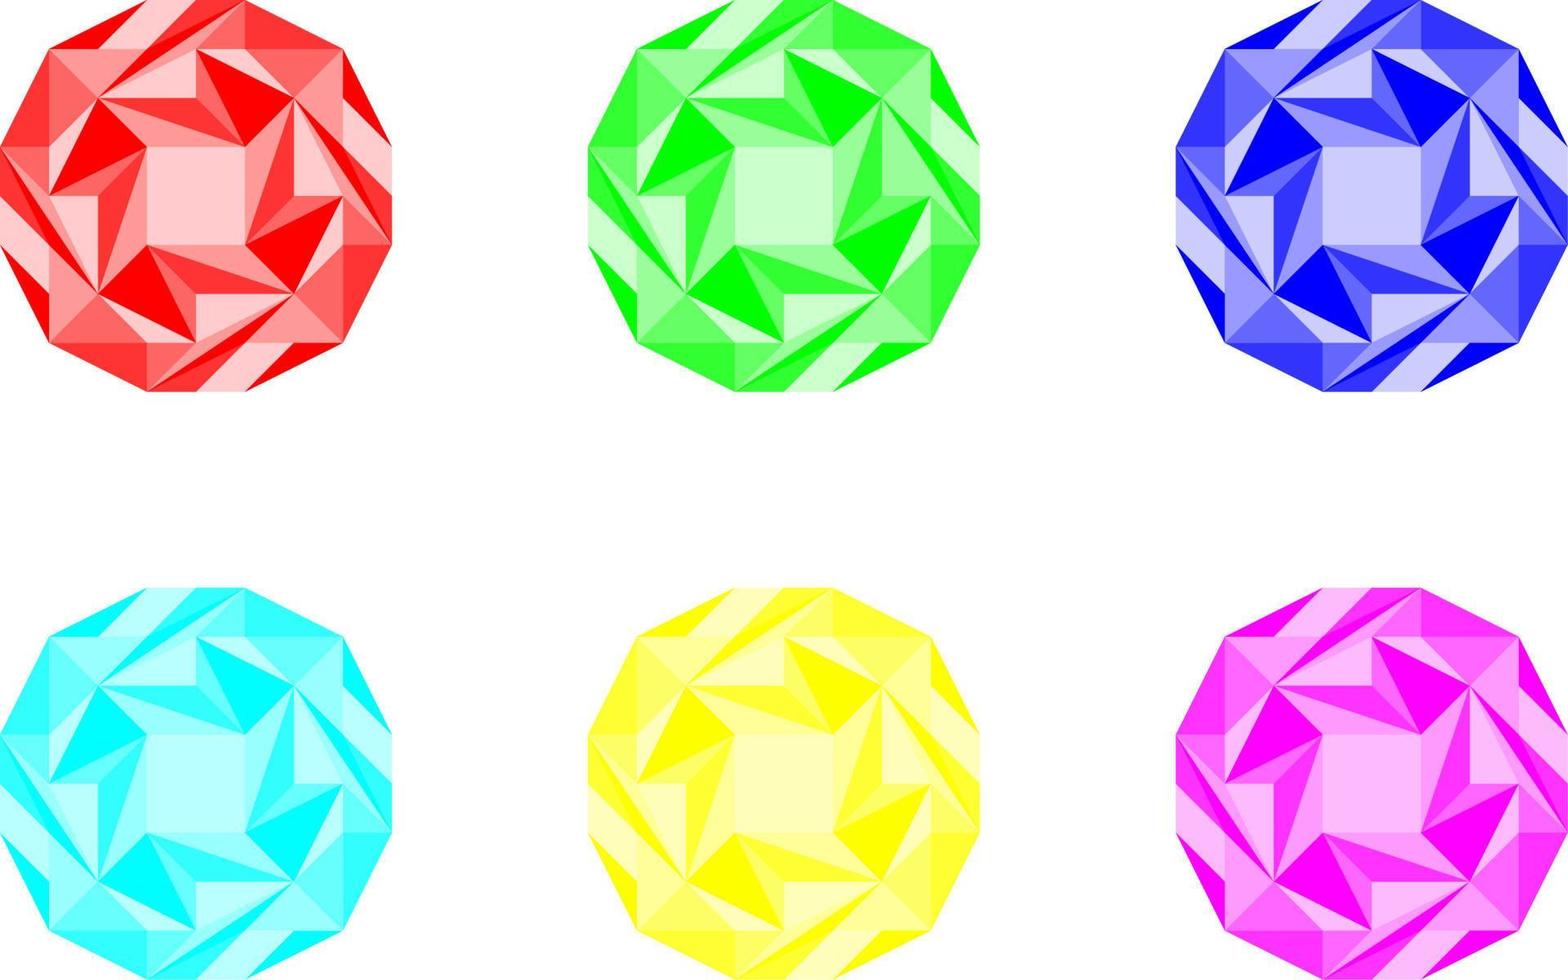 satz von kreiskristalledelsteinen für zeichen-, symbol-, logo-, symbol- oder artikelspiele vektor